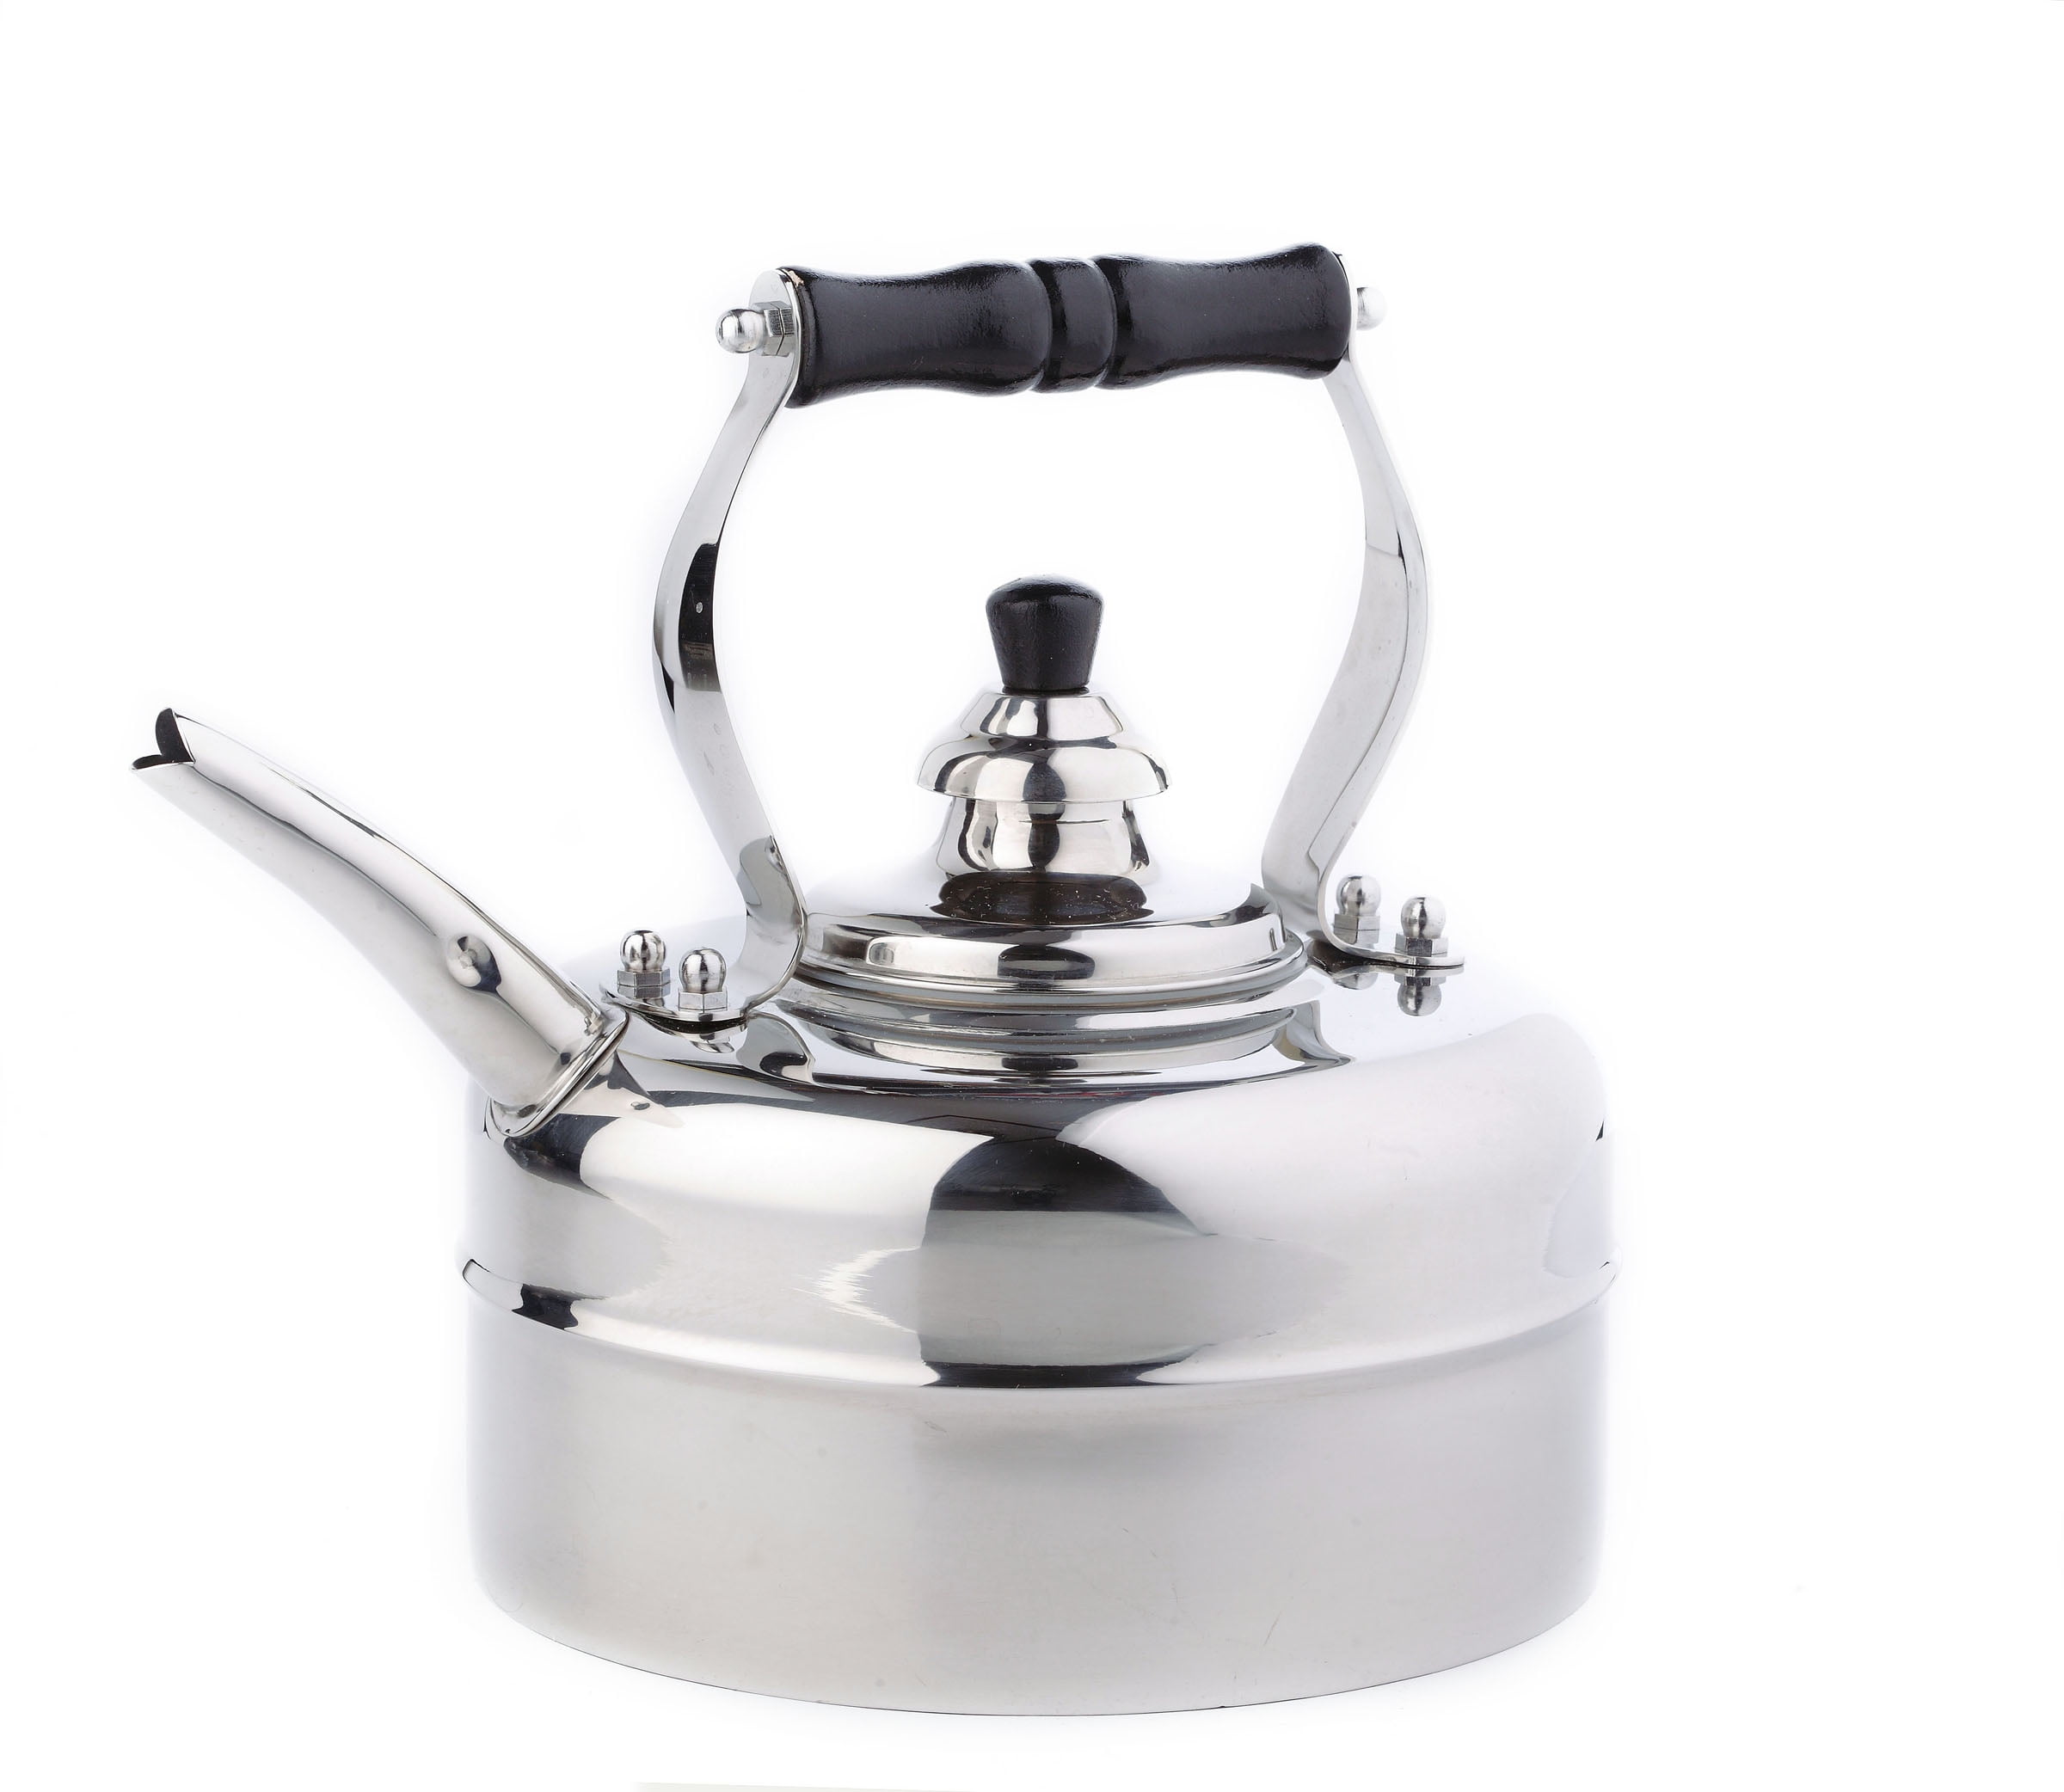 Dropship Stainless Steel Whistling Tea Kettle, 3.17 Quart, Teapot